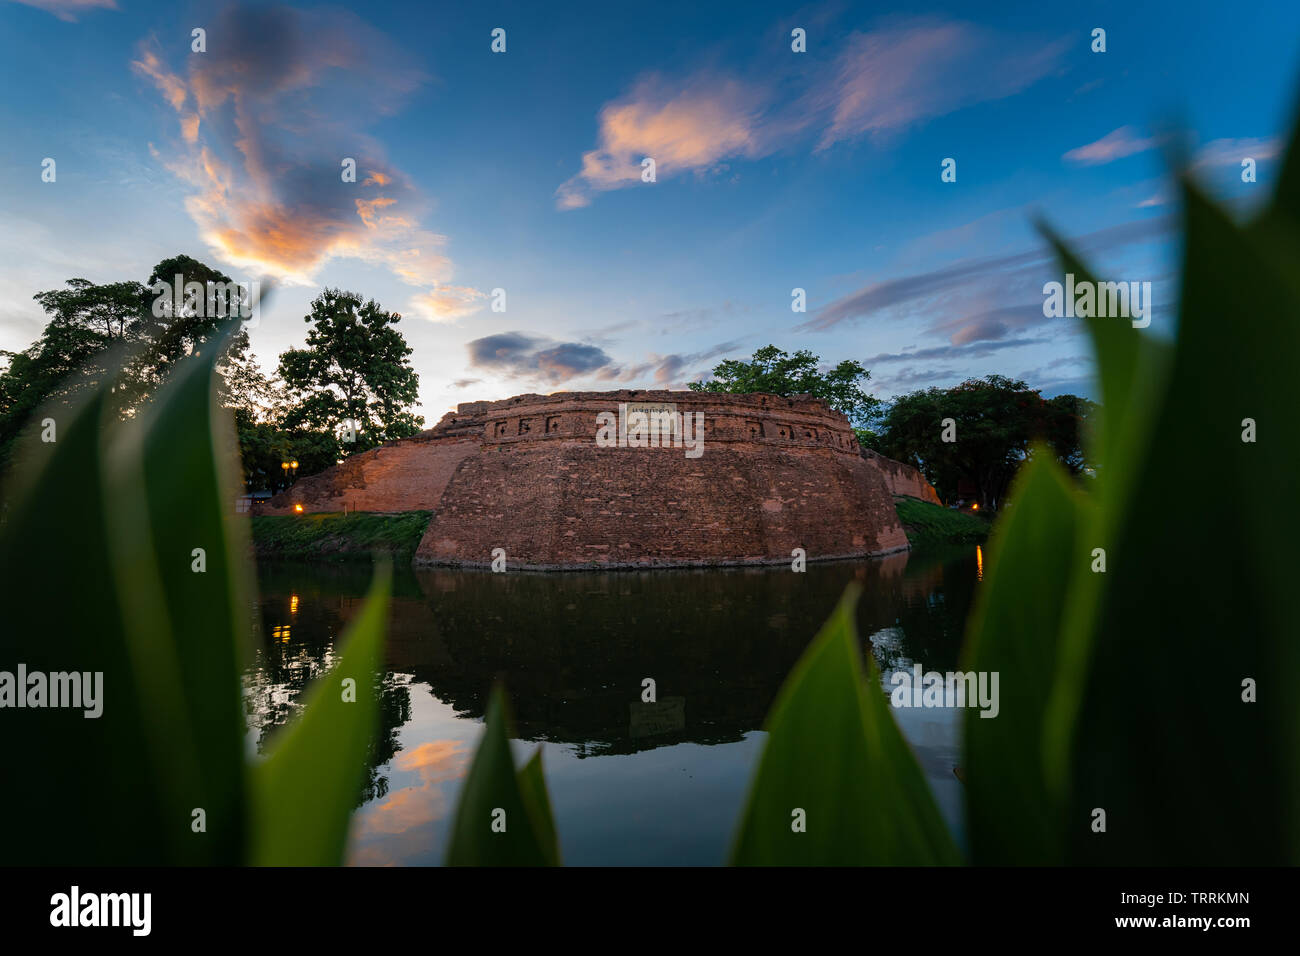 Ancien mur de la ville de Chiang Mai et de douves en sunset sky Banque D'Images